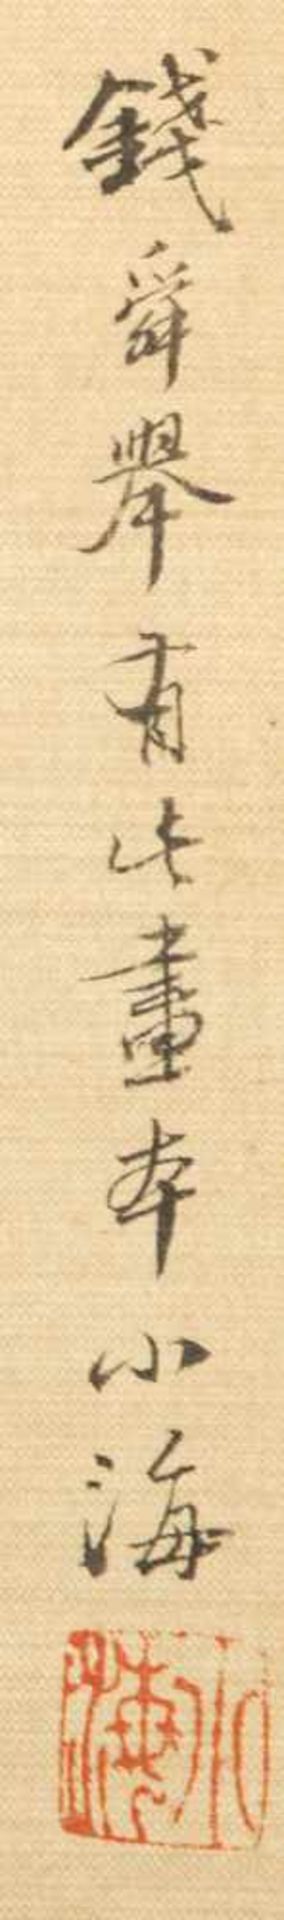 Weng Luo (1790-1842) - Bild 5 aus 17